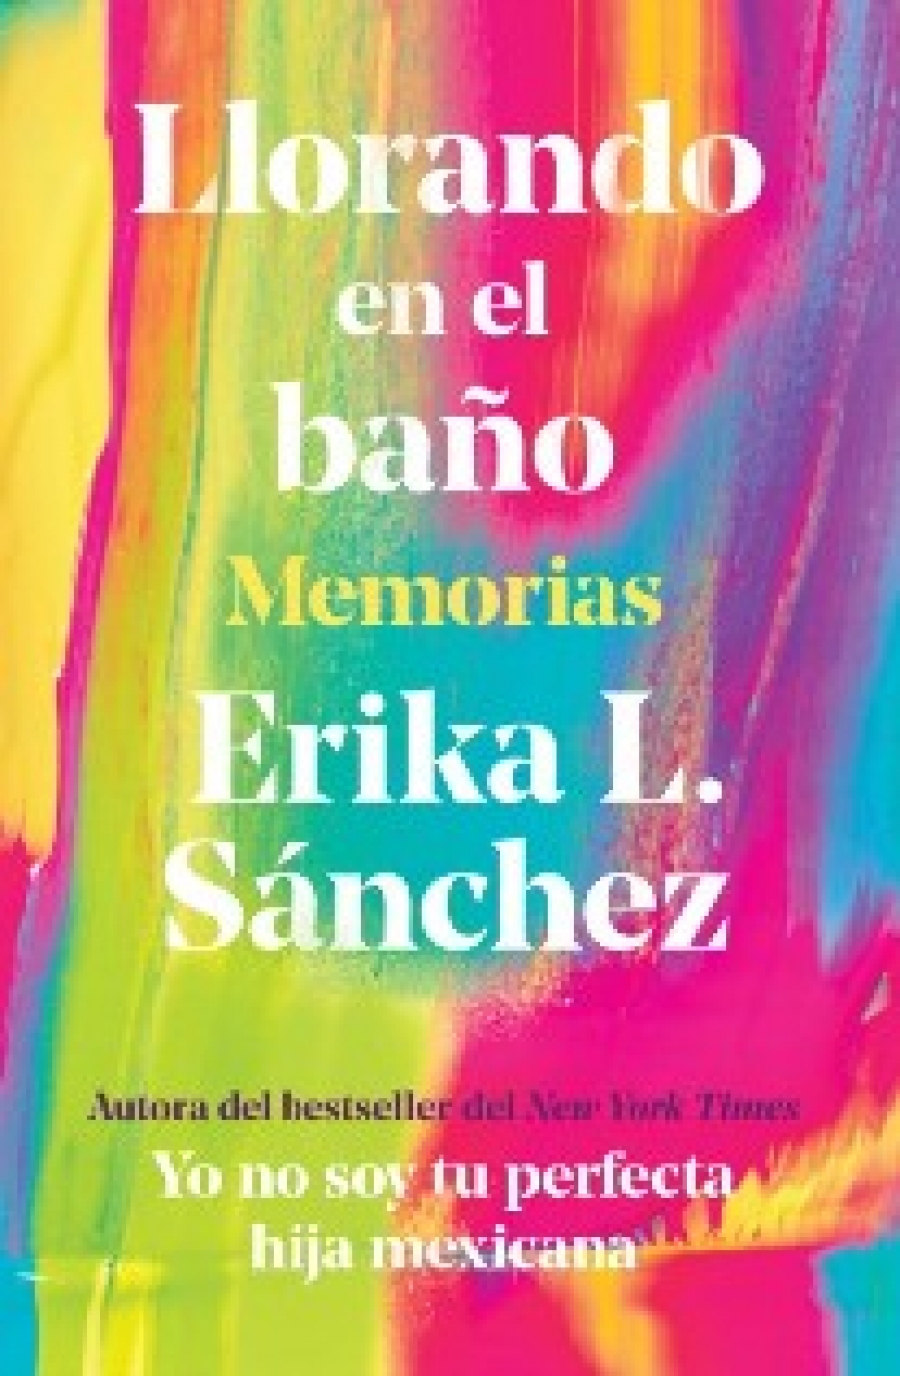 Sanchez, Erika L Llorando En El Bano: Memorias / Crying in the Bathroom: A Memoir 